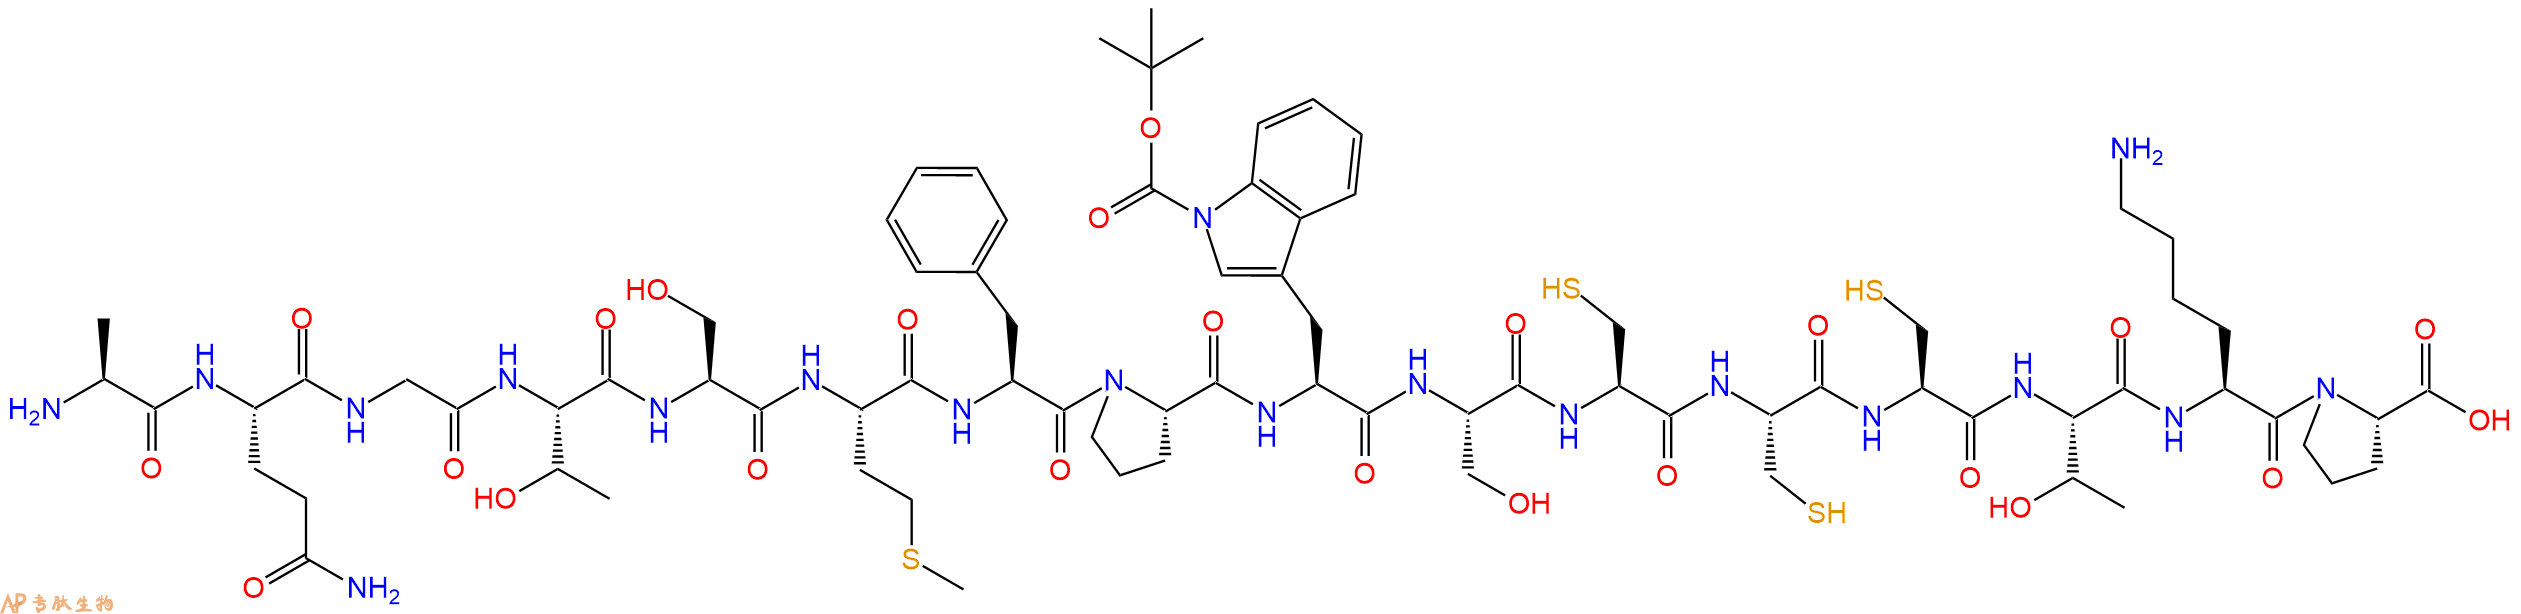 专肽生物产品H2N-Ala-Gln-Gly-Thr-Ser-Met-Phe-Pro-Trp(Boc)-Ser-Cys-Cys-Cys-Thr-Lys-Pro-COOH